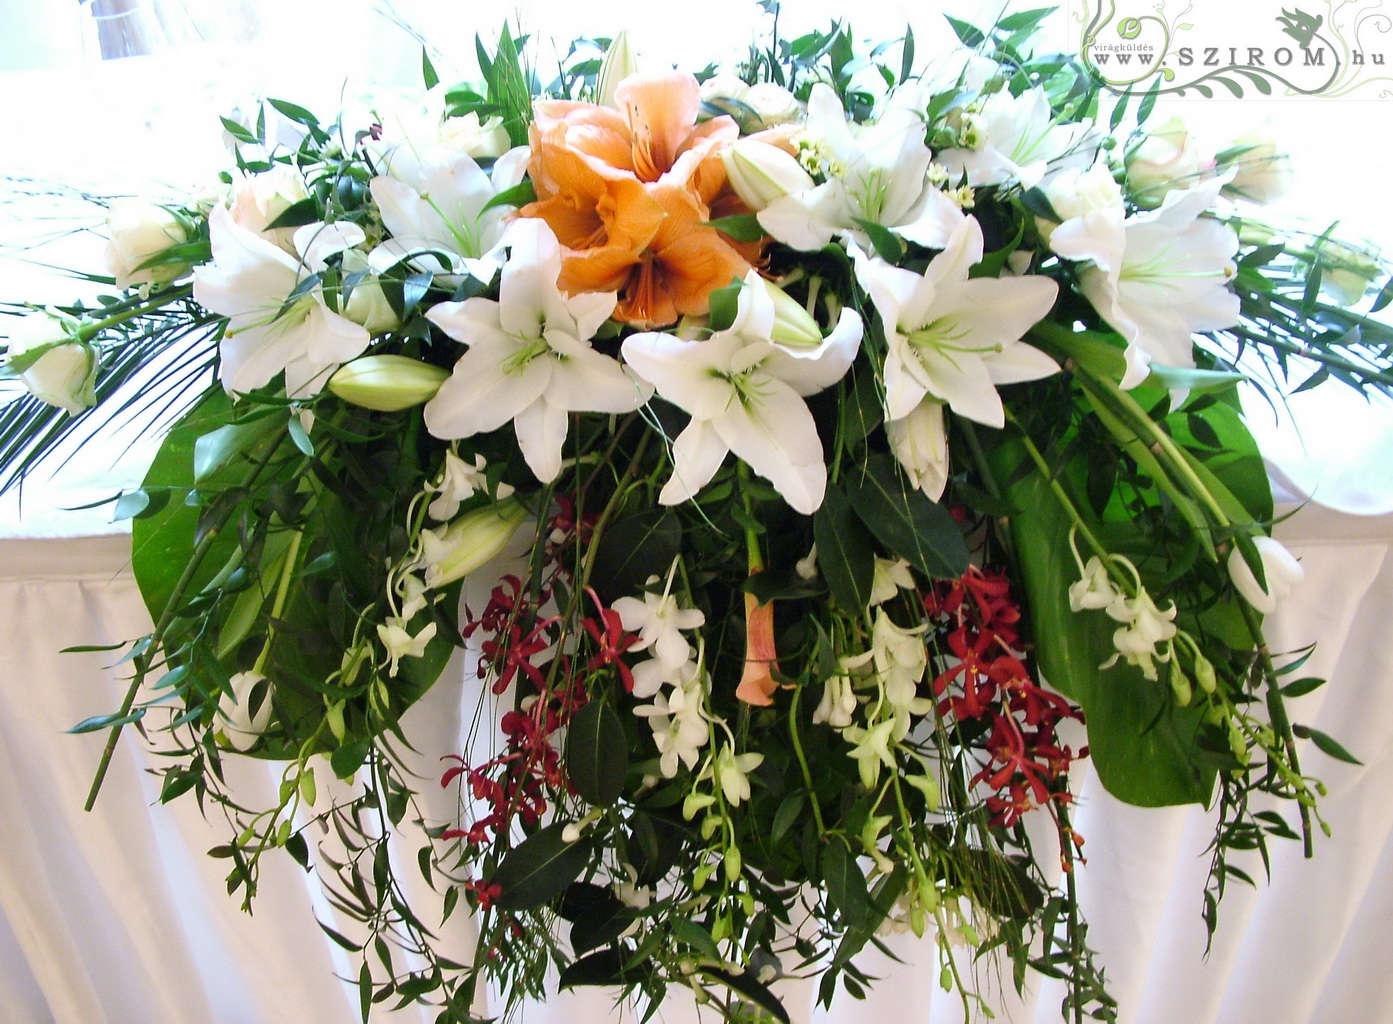 Főasztaldísz (rózsa, liliom, amaryllisz, dendrobium, pók orchidea, vörös, fehér ) Ybl Palota, esküvő